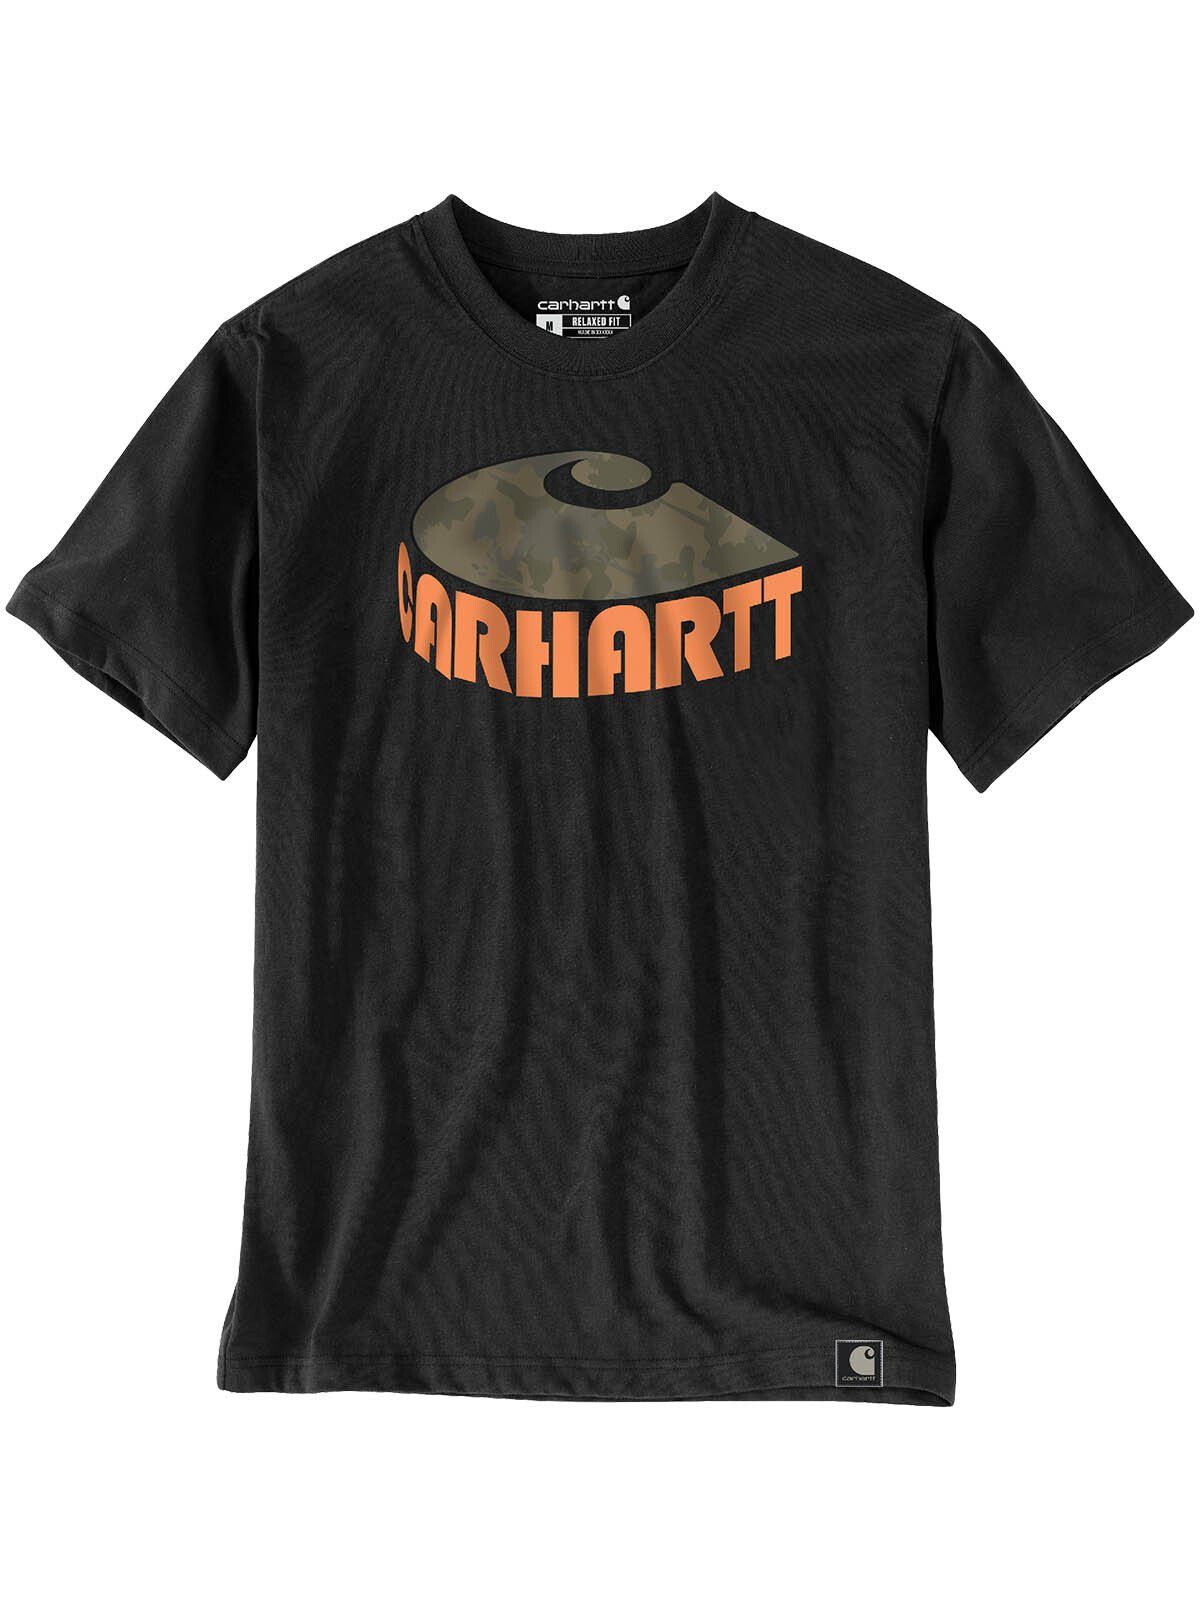 Carhartt T-Shirt 106155-BLK Carhartt Camo